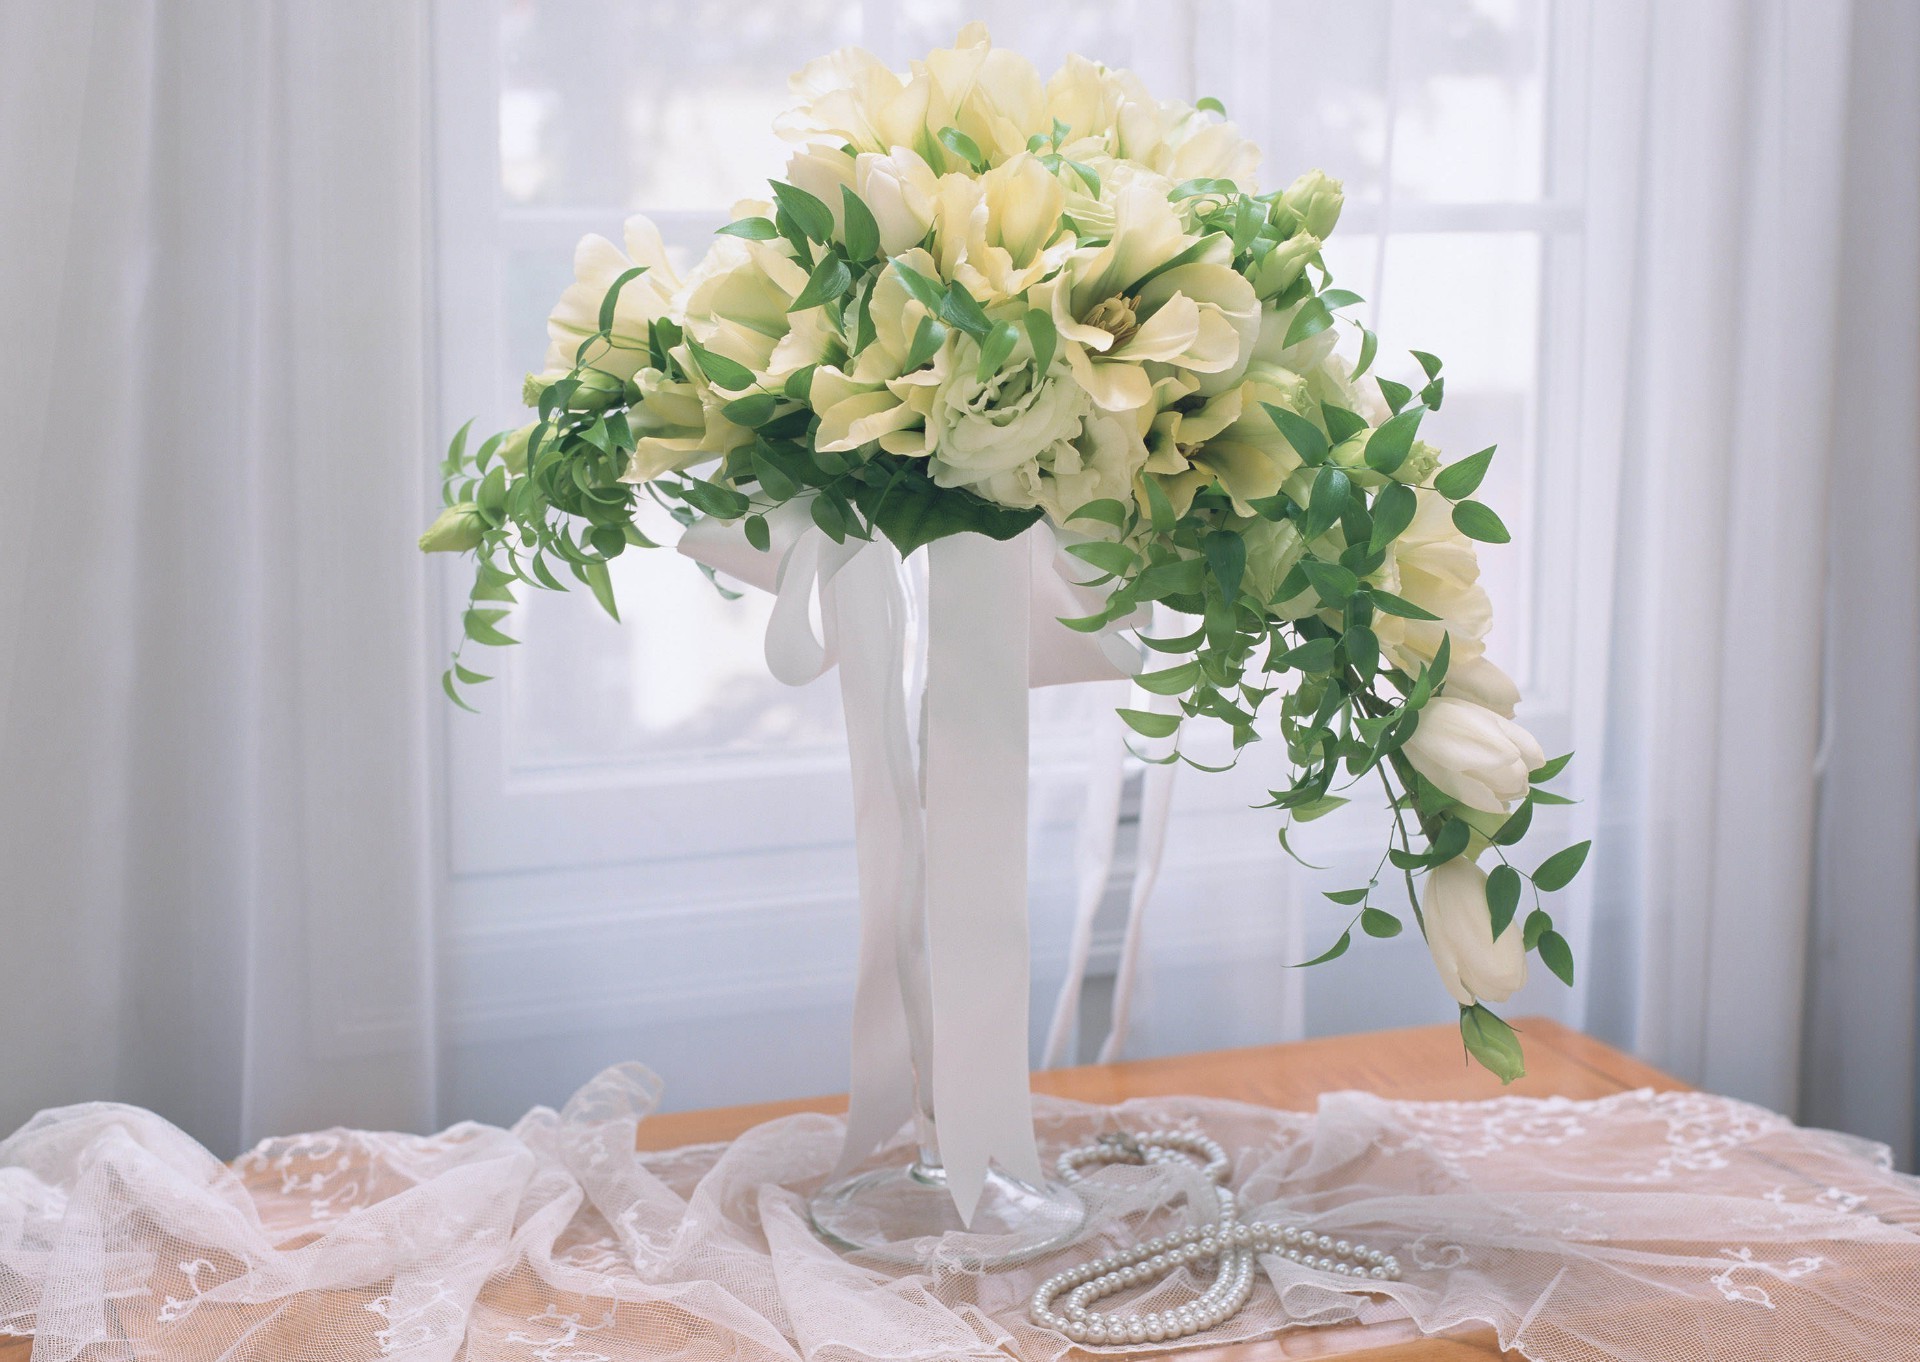 букет цветов свадьба букет в помещении ваза цветок романтика невеста семья любовь украшения лист таблица